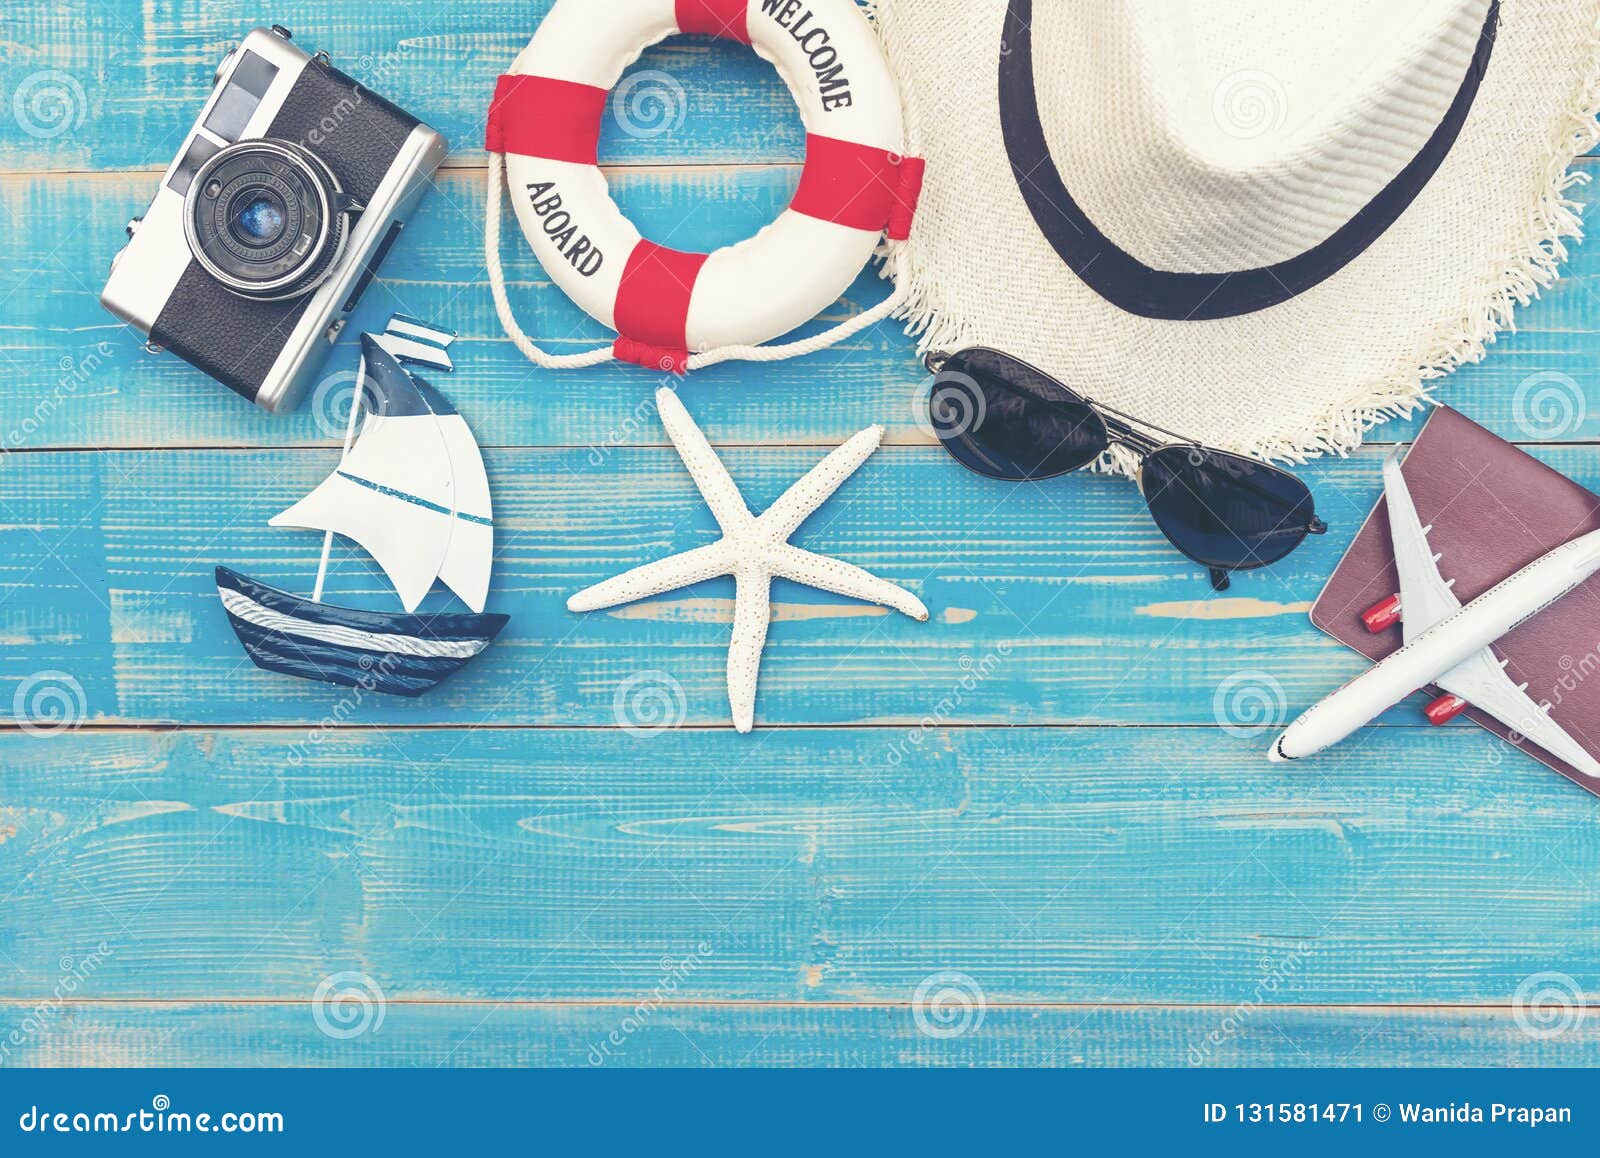 Travel Plan Trip. Top View Traveler Planning Trip Stock Image - Image ...